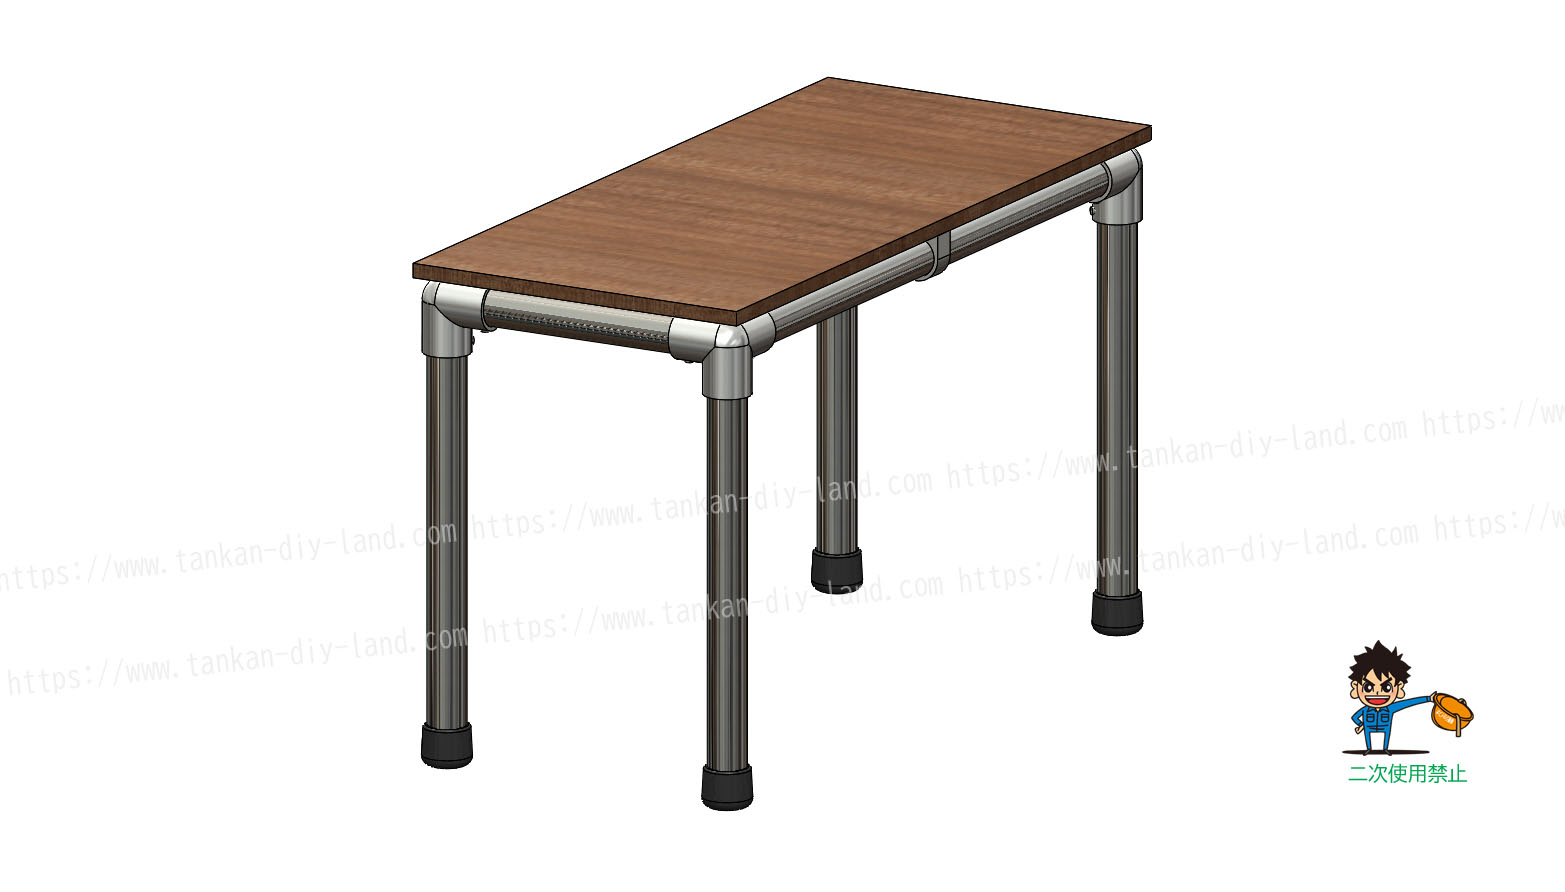 突起が無いから家具にもオススメ ｌａｂｏ金具で作る テーブル テーブル 5 単管パイプで作る 単管パイプのdiy向け 技術者向けの情報なら単管 Diyランド